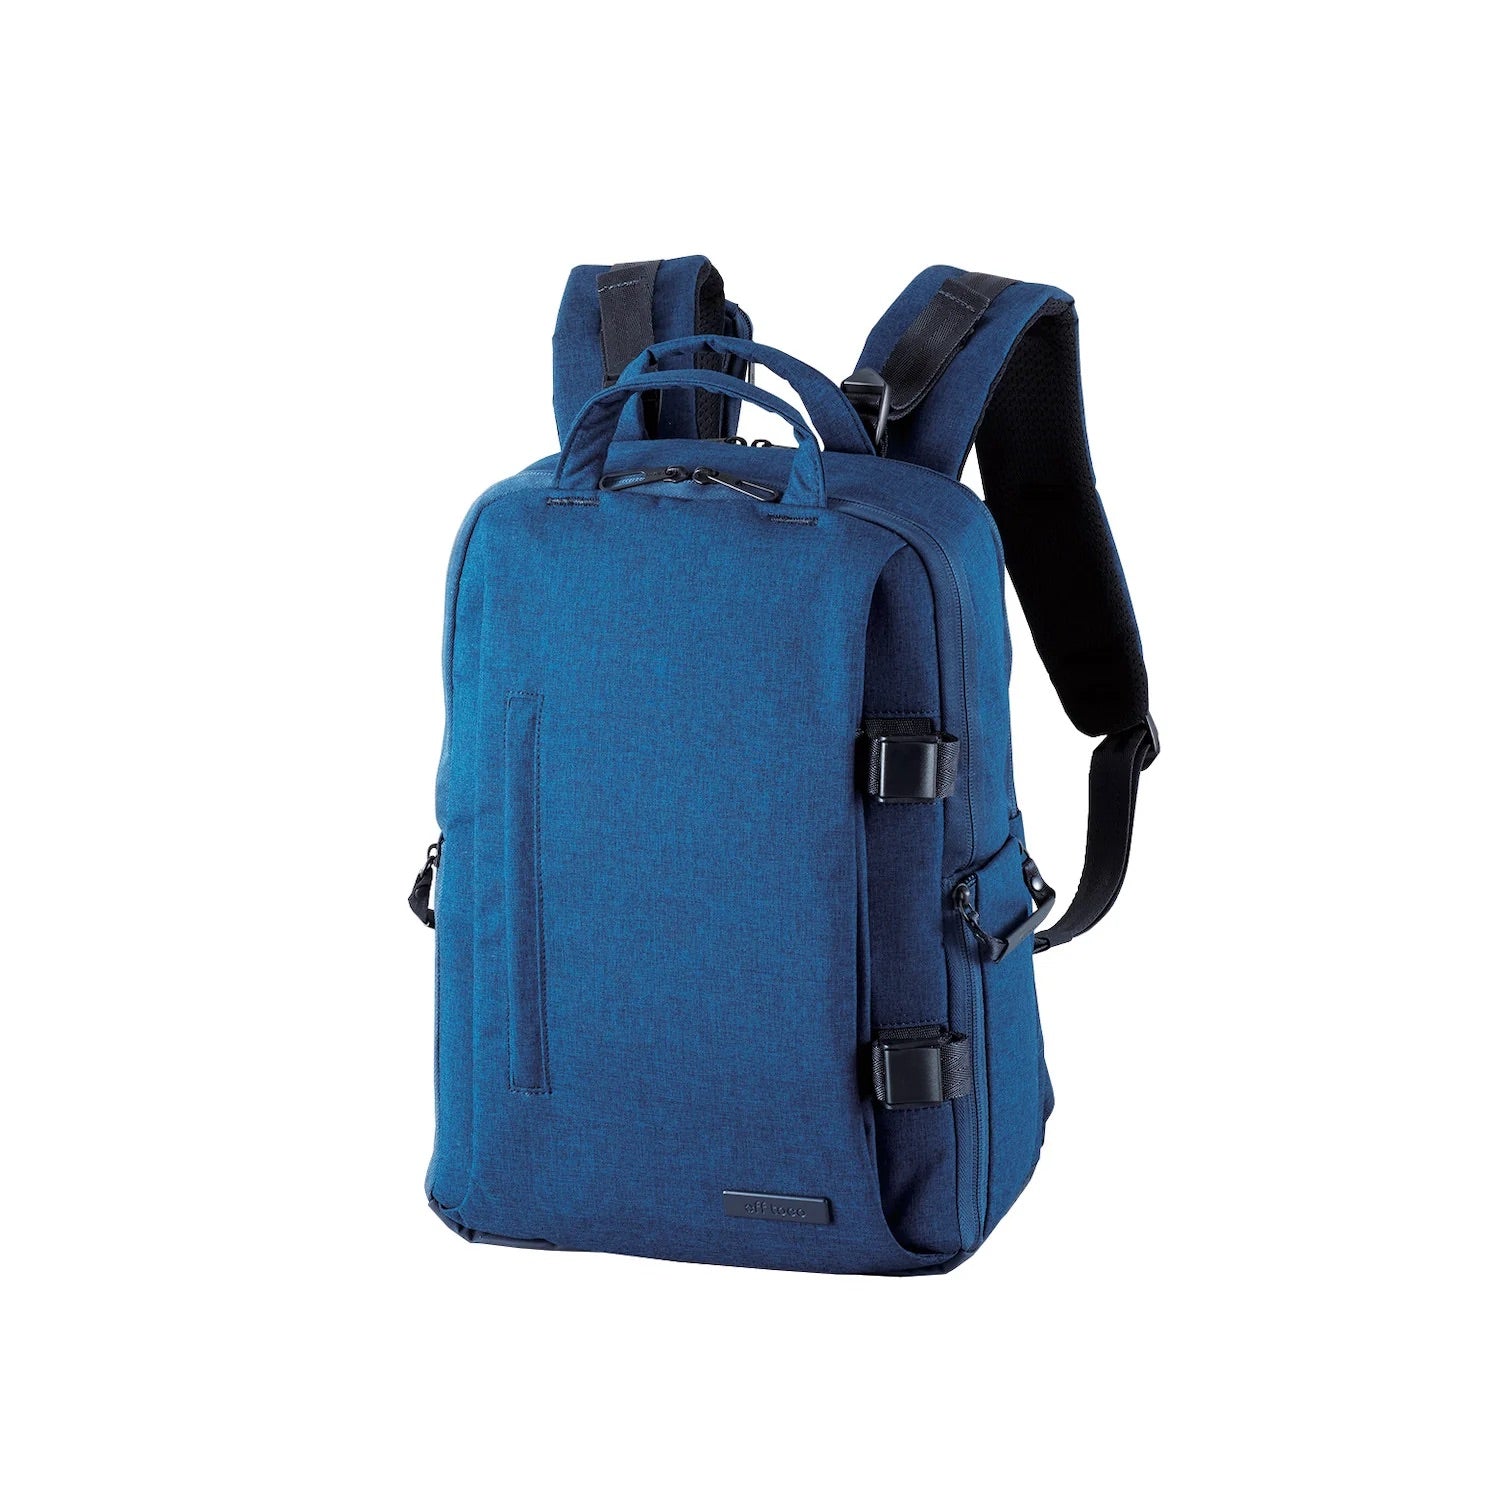 ELECOM - DGB-S038 - OFF TOCO Premium Camera Backpack